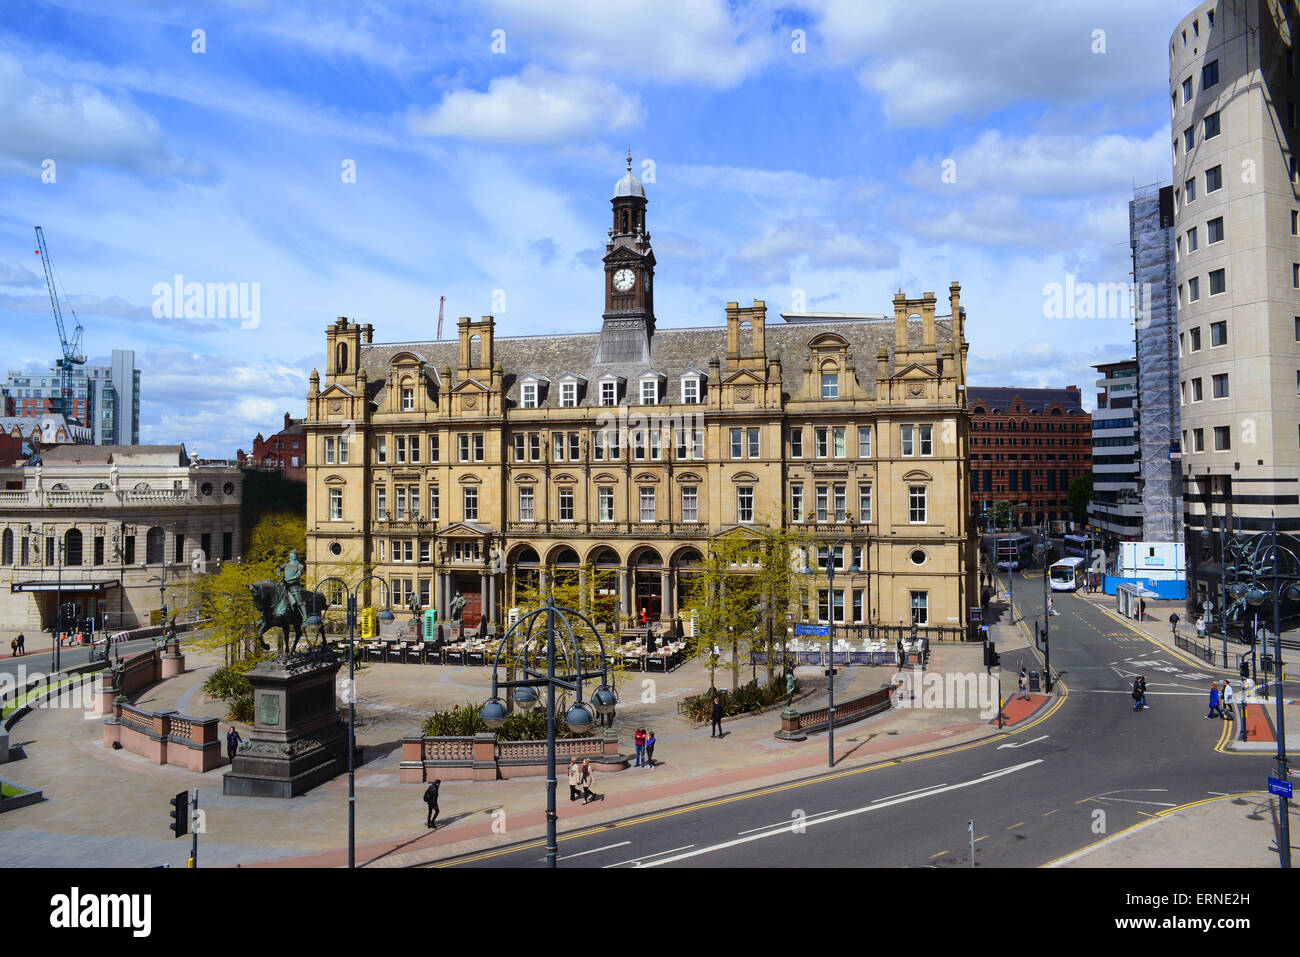 quadratische Stadt Leeds, Yorkshire, Vereinigtes Königreich mit Statue, Edward Prince Of Wales, der schwarze Prinz, der bei Crécy kämpfte Stockfoto